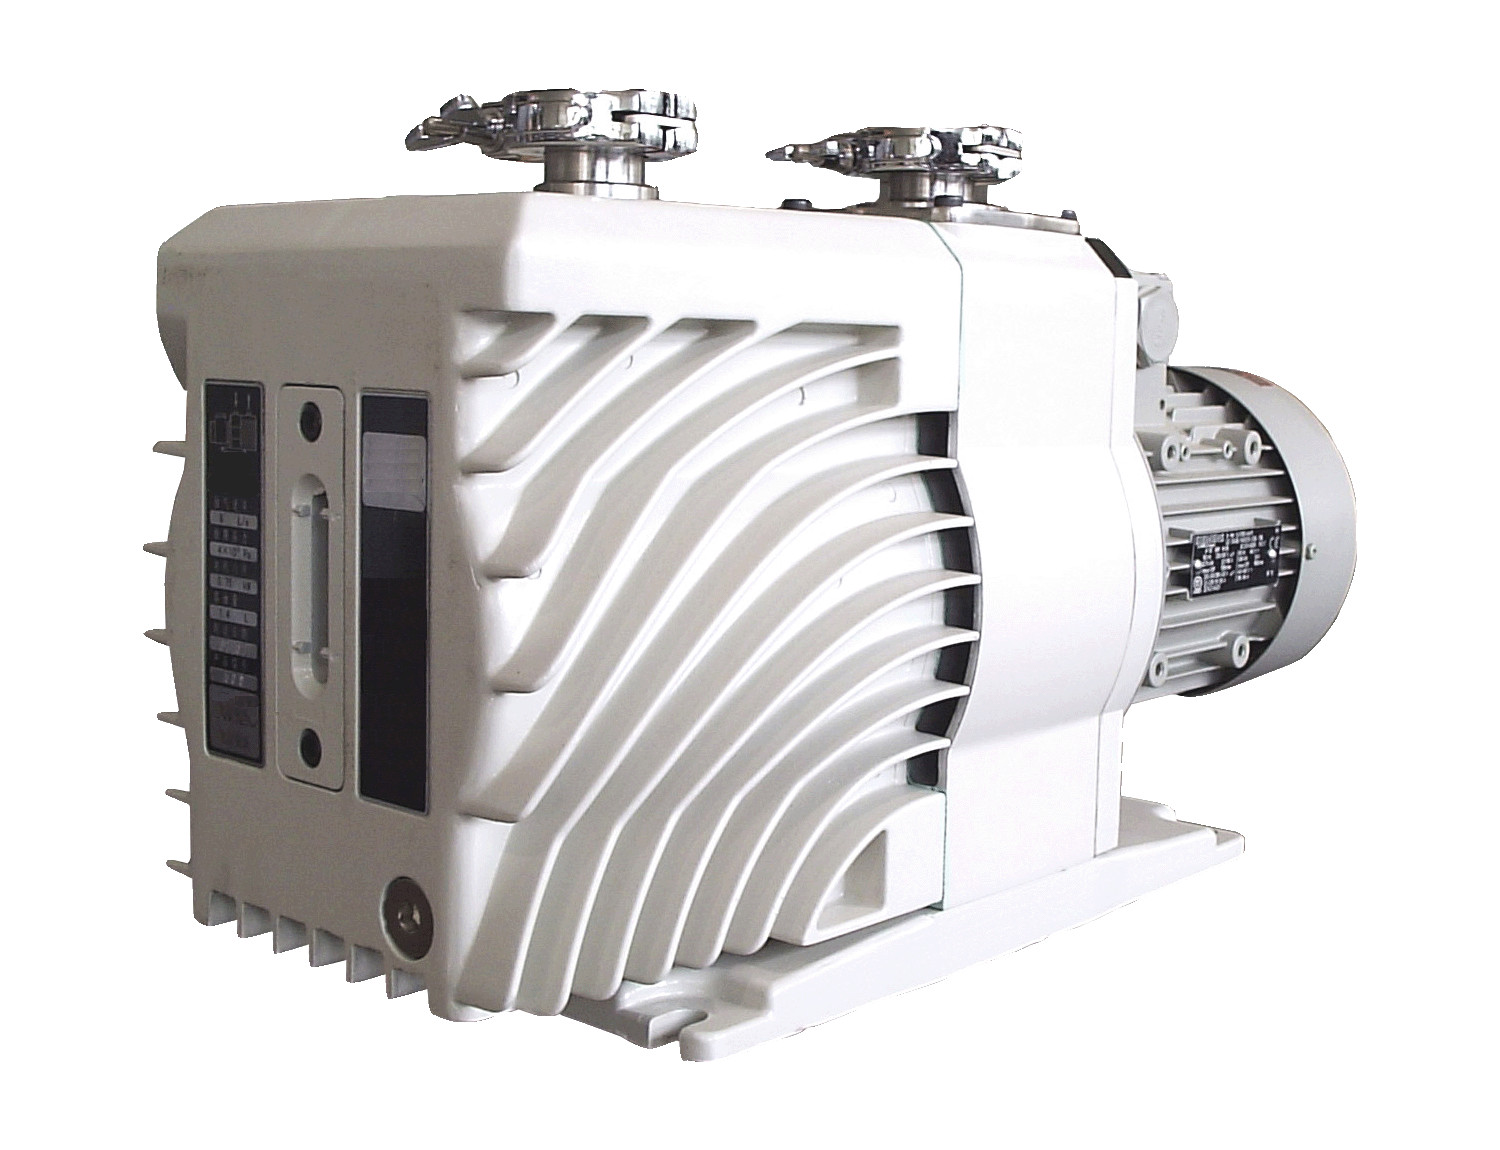 Picture of the EVD-24 vacuum pump